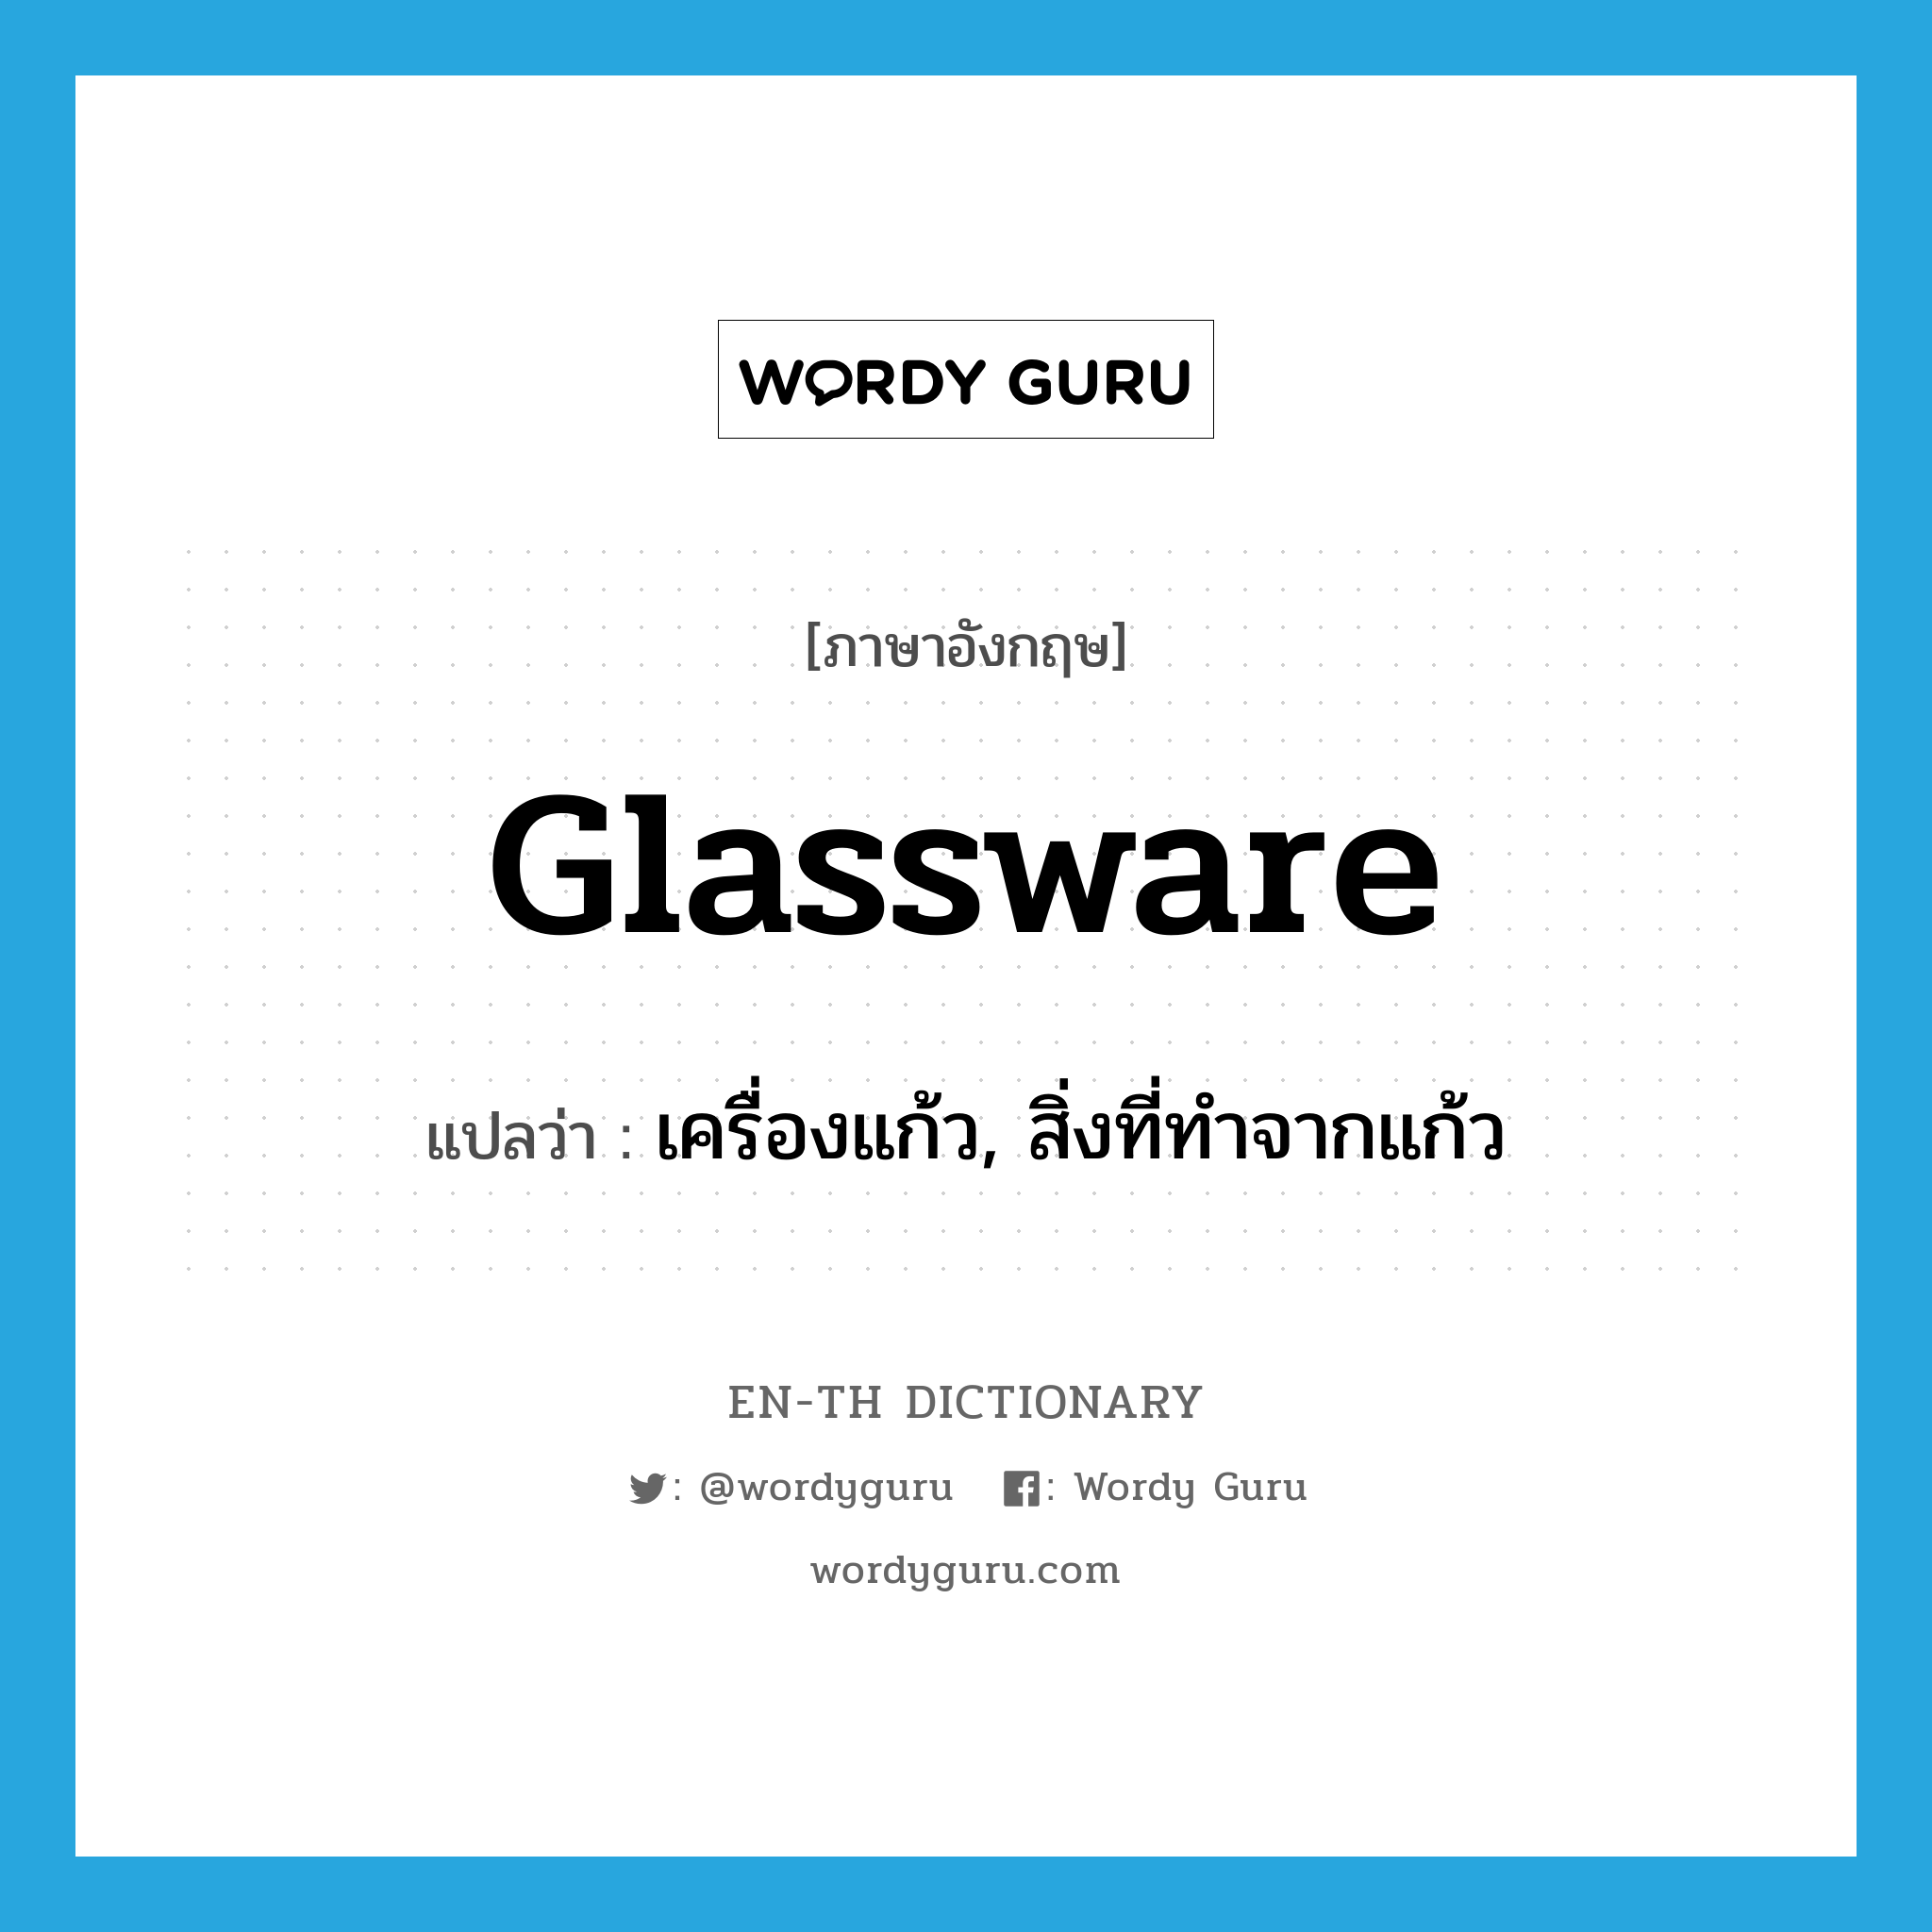 เครื่องแก้ว, สิ่งที่ทำจากแก้ว ภาษาอังกฤษ?, คำศัพท์ภาษาอังกฤษ เครื่องแก้ว, สิ่งที่ทำจากแก้ว แปลว่า glassware ประเภท N หมวด N